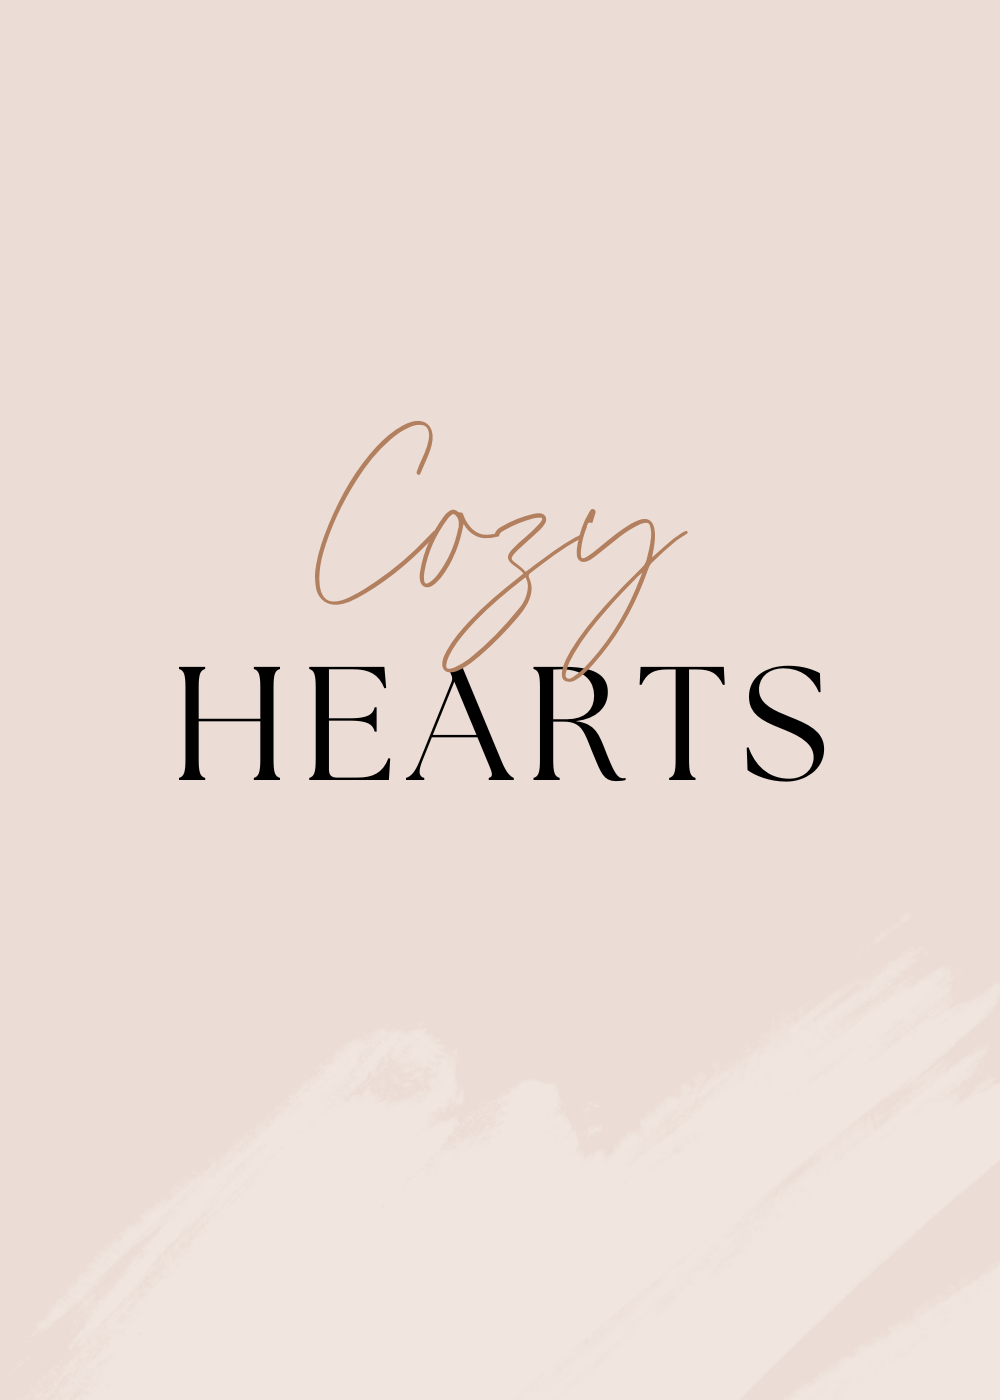 Cozy Hearts